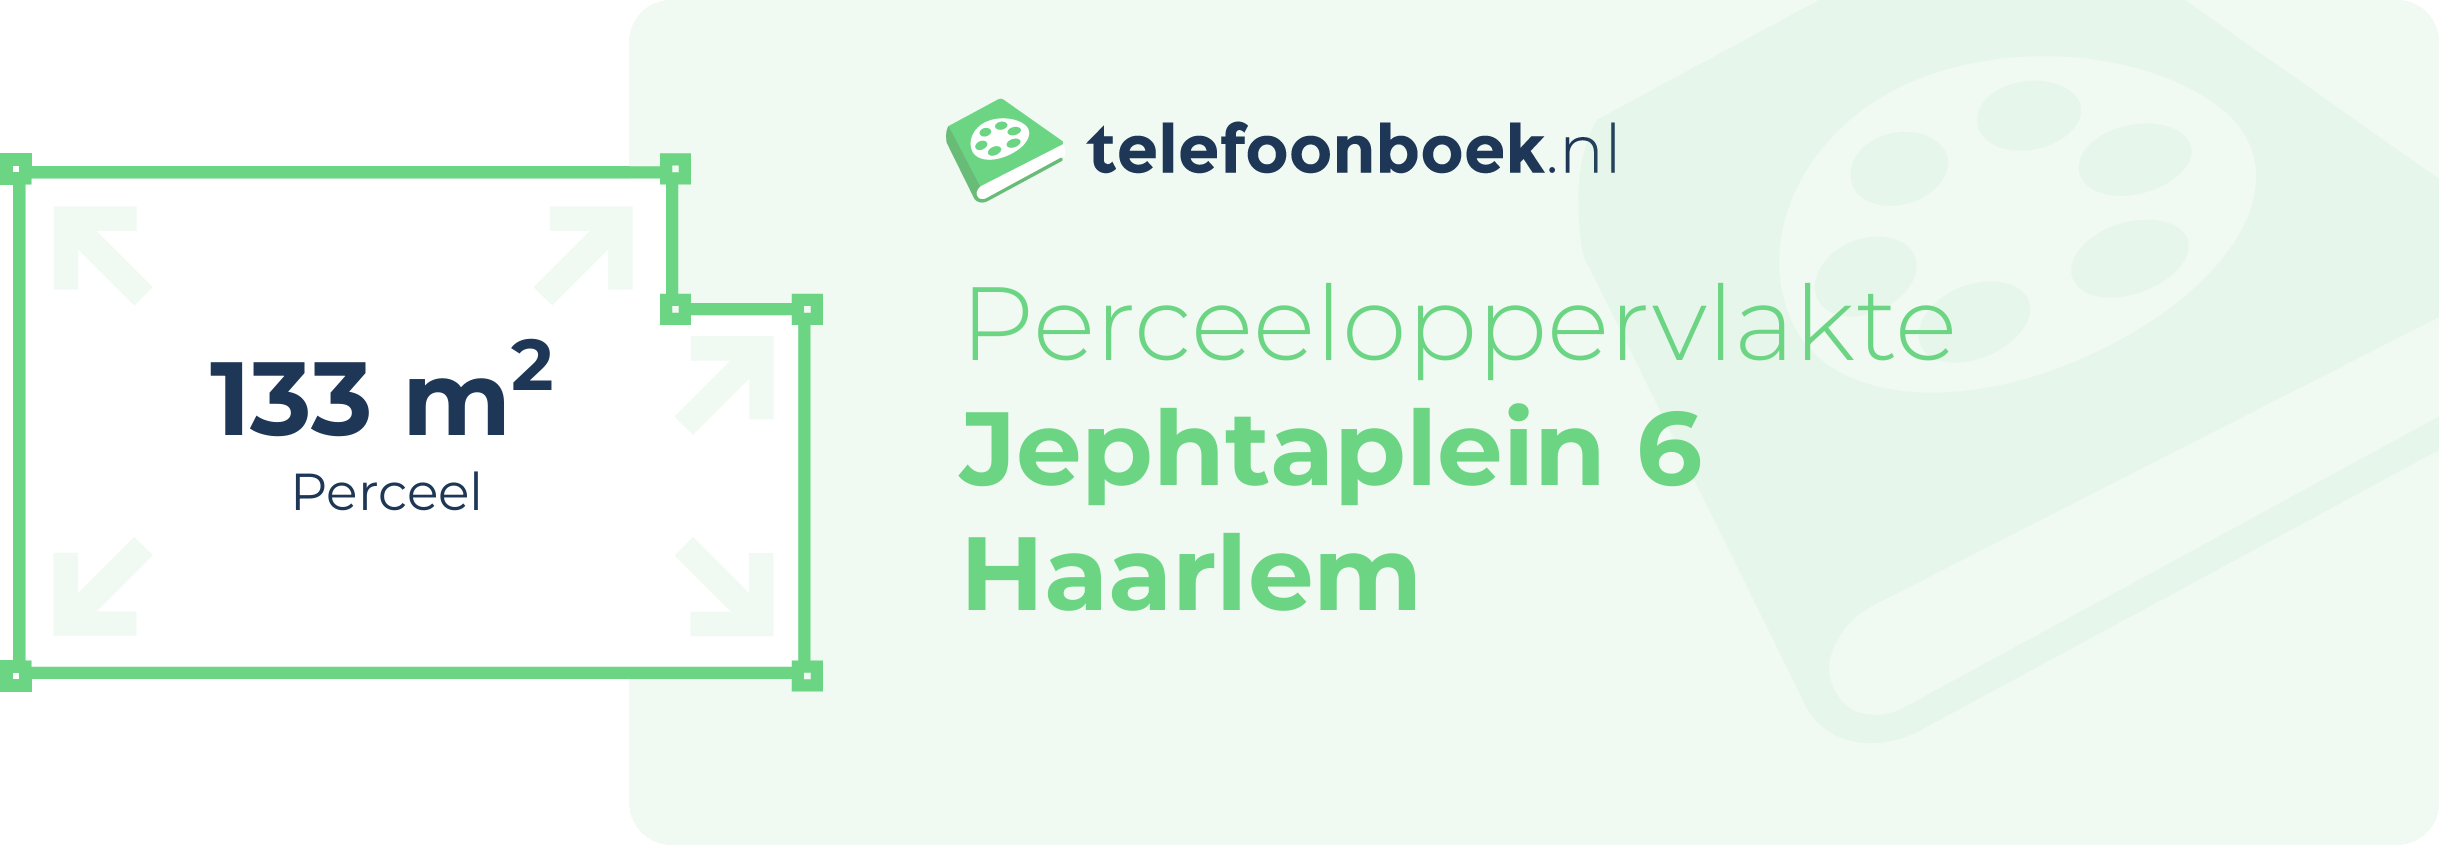 Perceeloppervlakte Jephtaplein 6 Haarlem